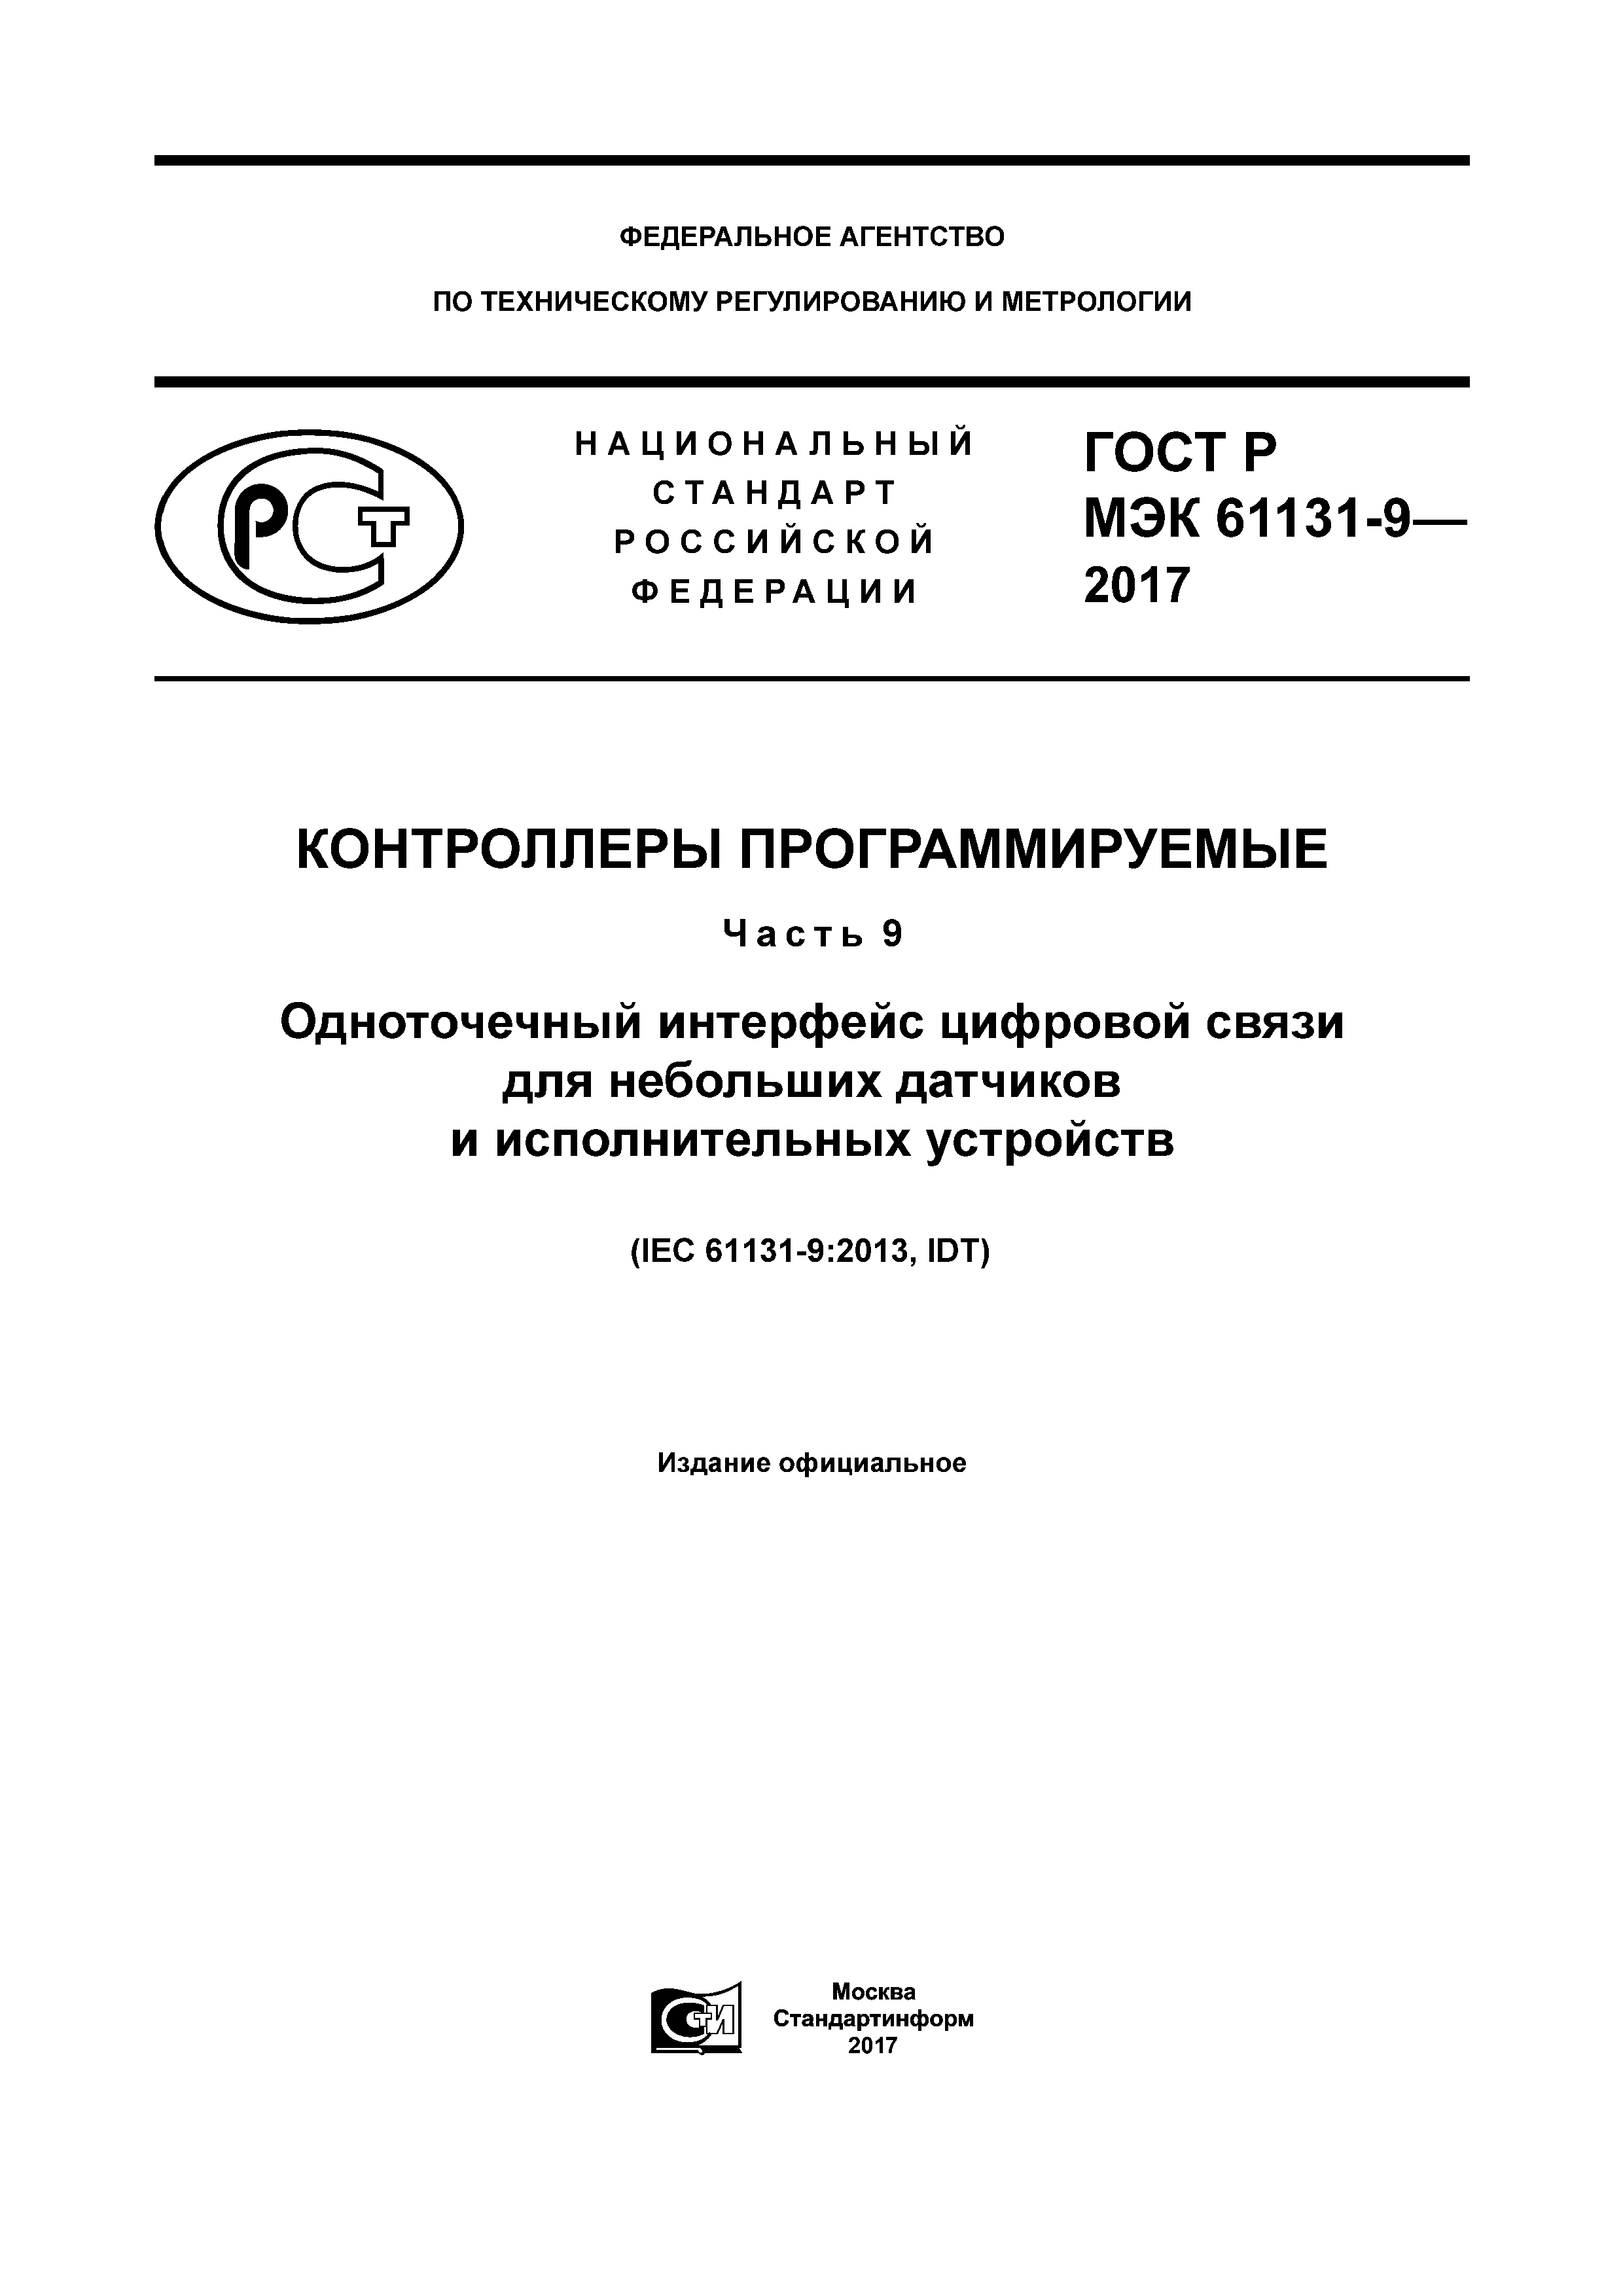 ГОСТ Р МЭК 61131-9-2017